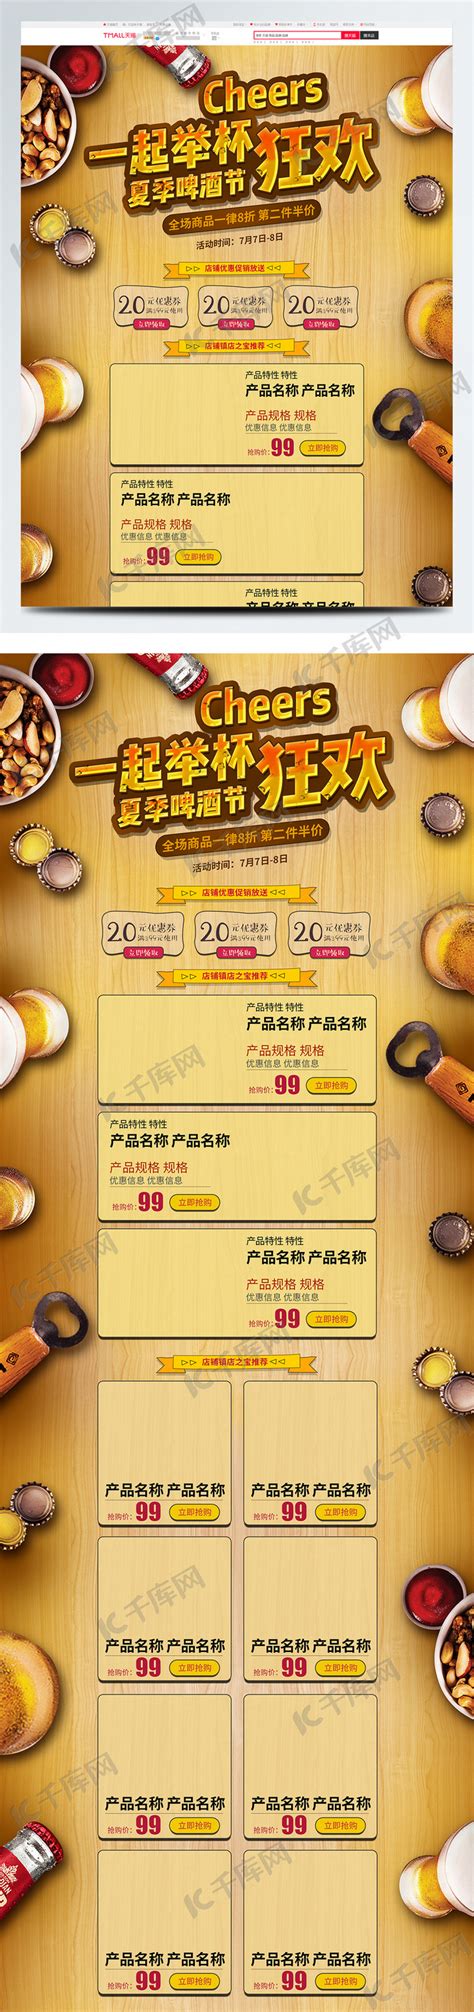 电商淘宝啤酒节促销黄色木板简约首页海报模板下载-千库网